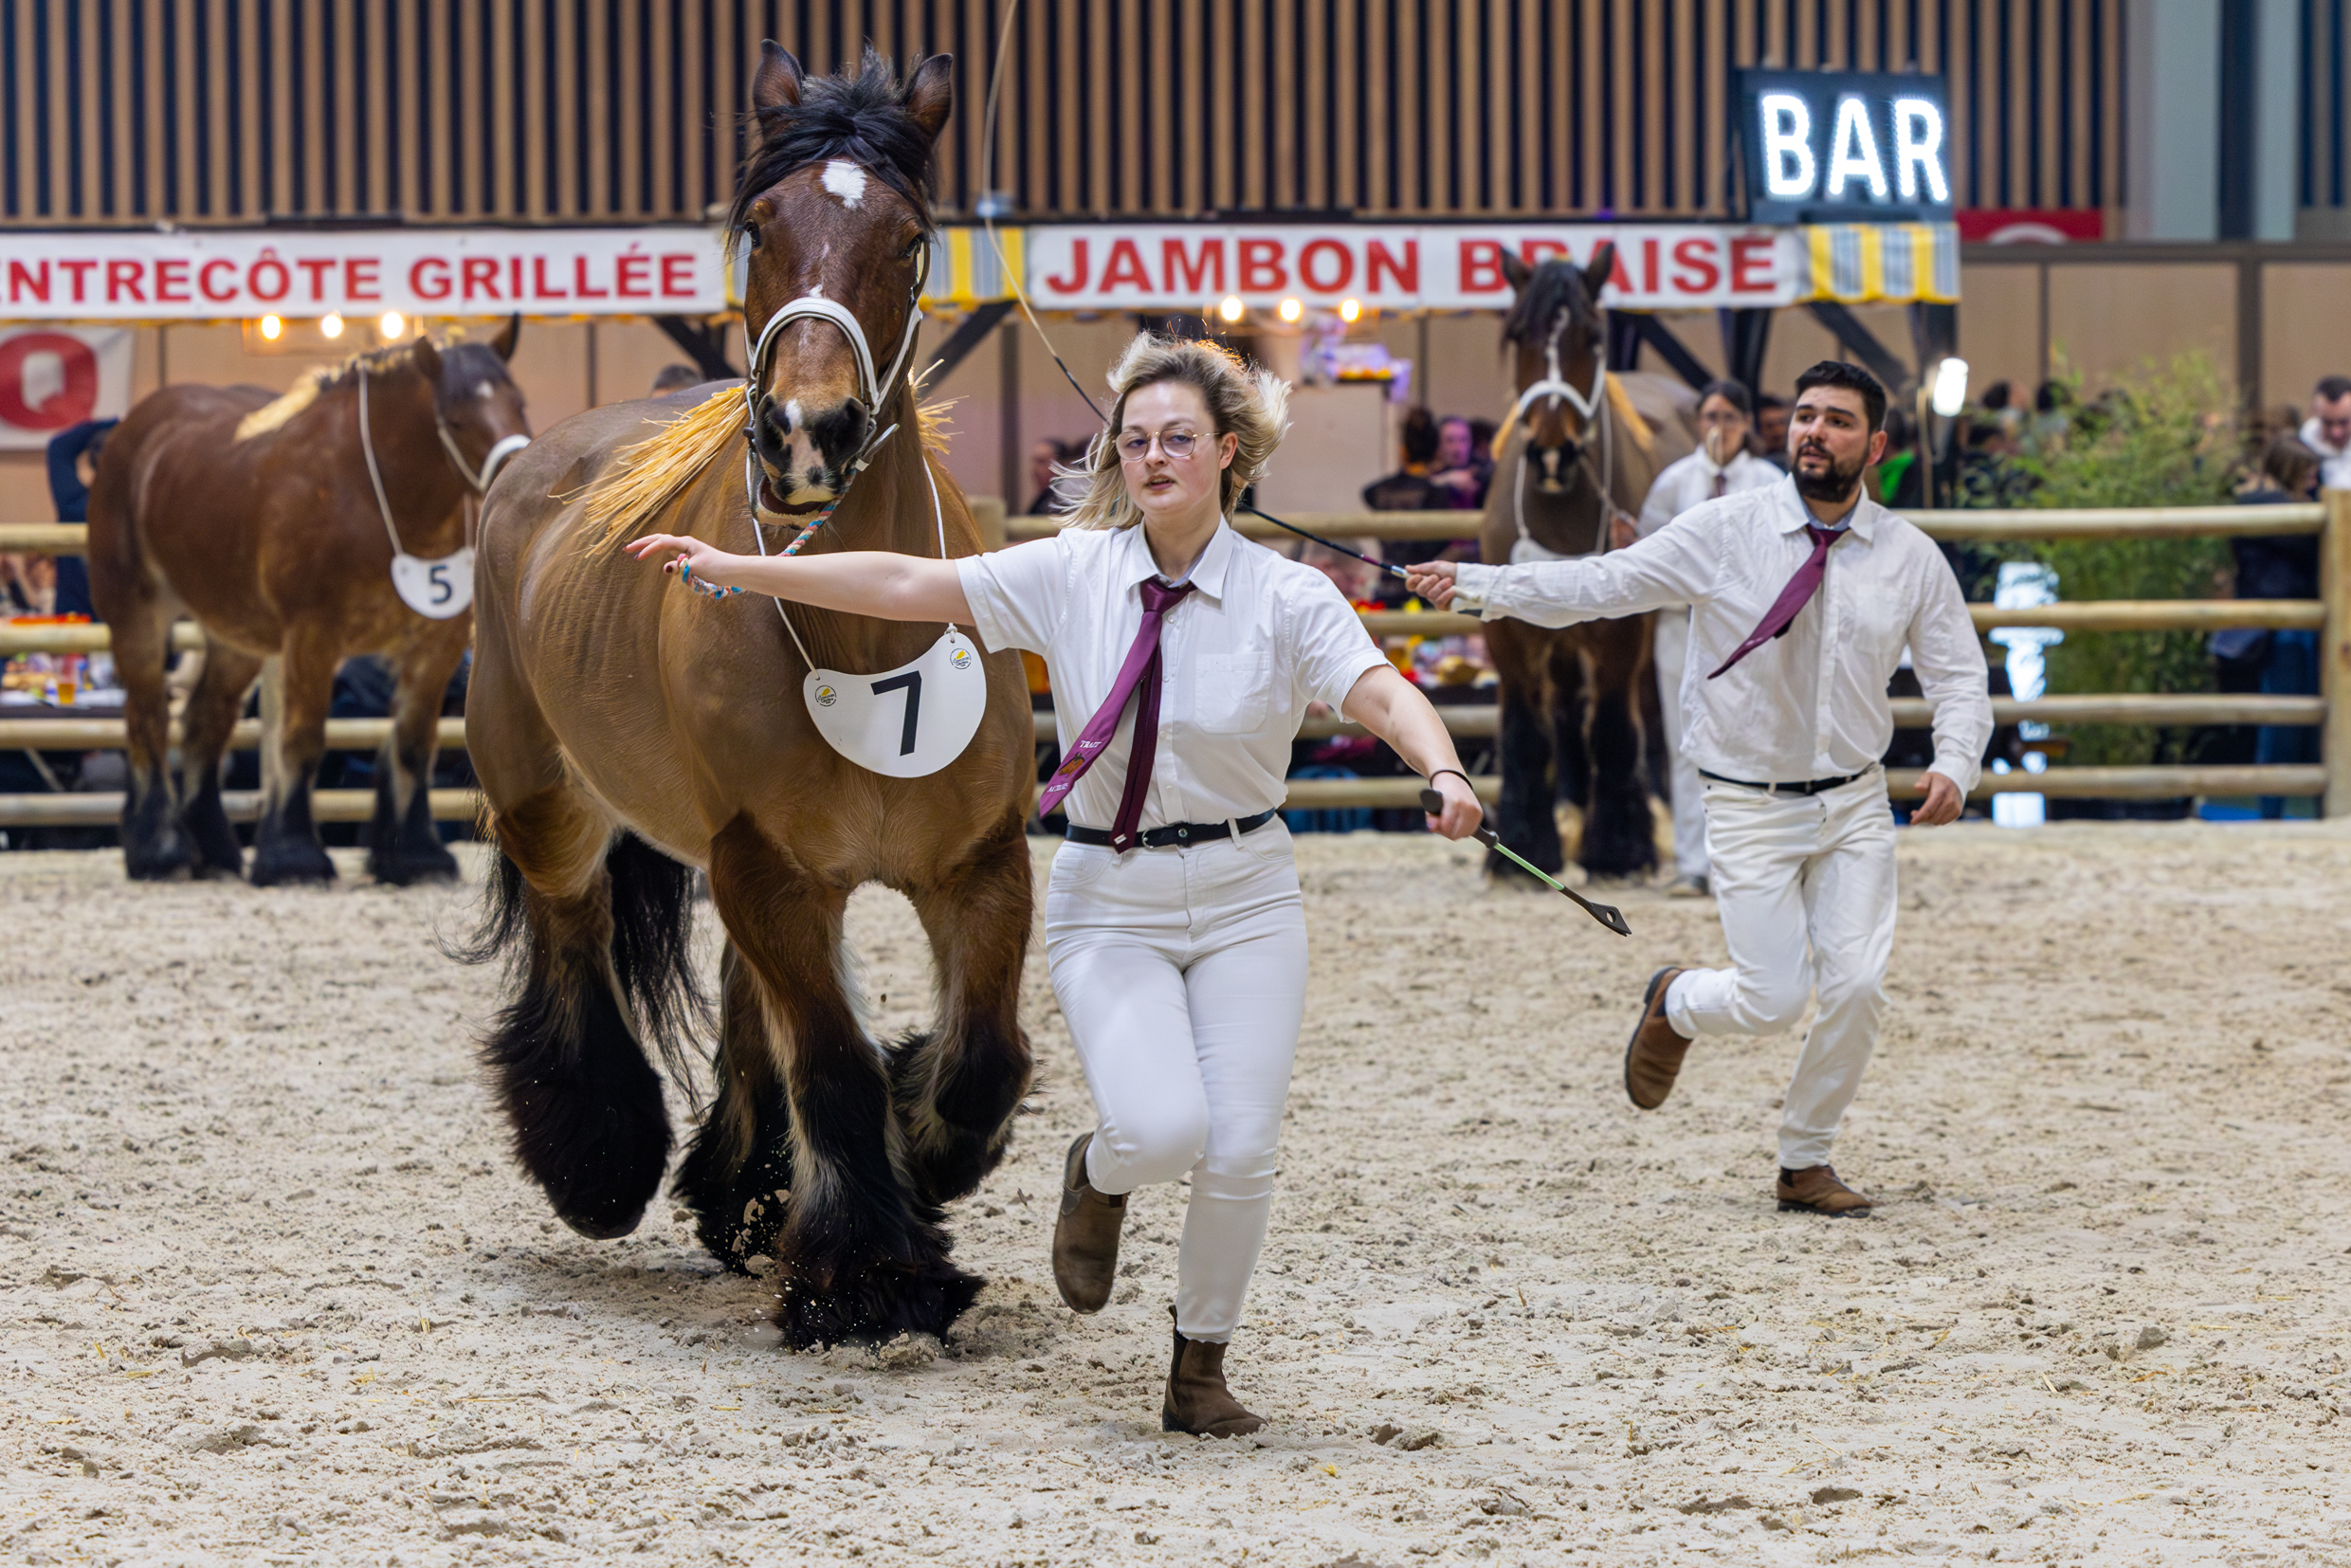 Pour la première fois, un cheval de Trait d’Auxois venu de Charente était en compétition sur le salon de l’agriculture. Photo : Xavier Ducordeaux.